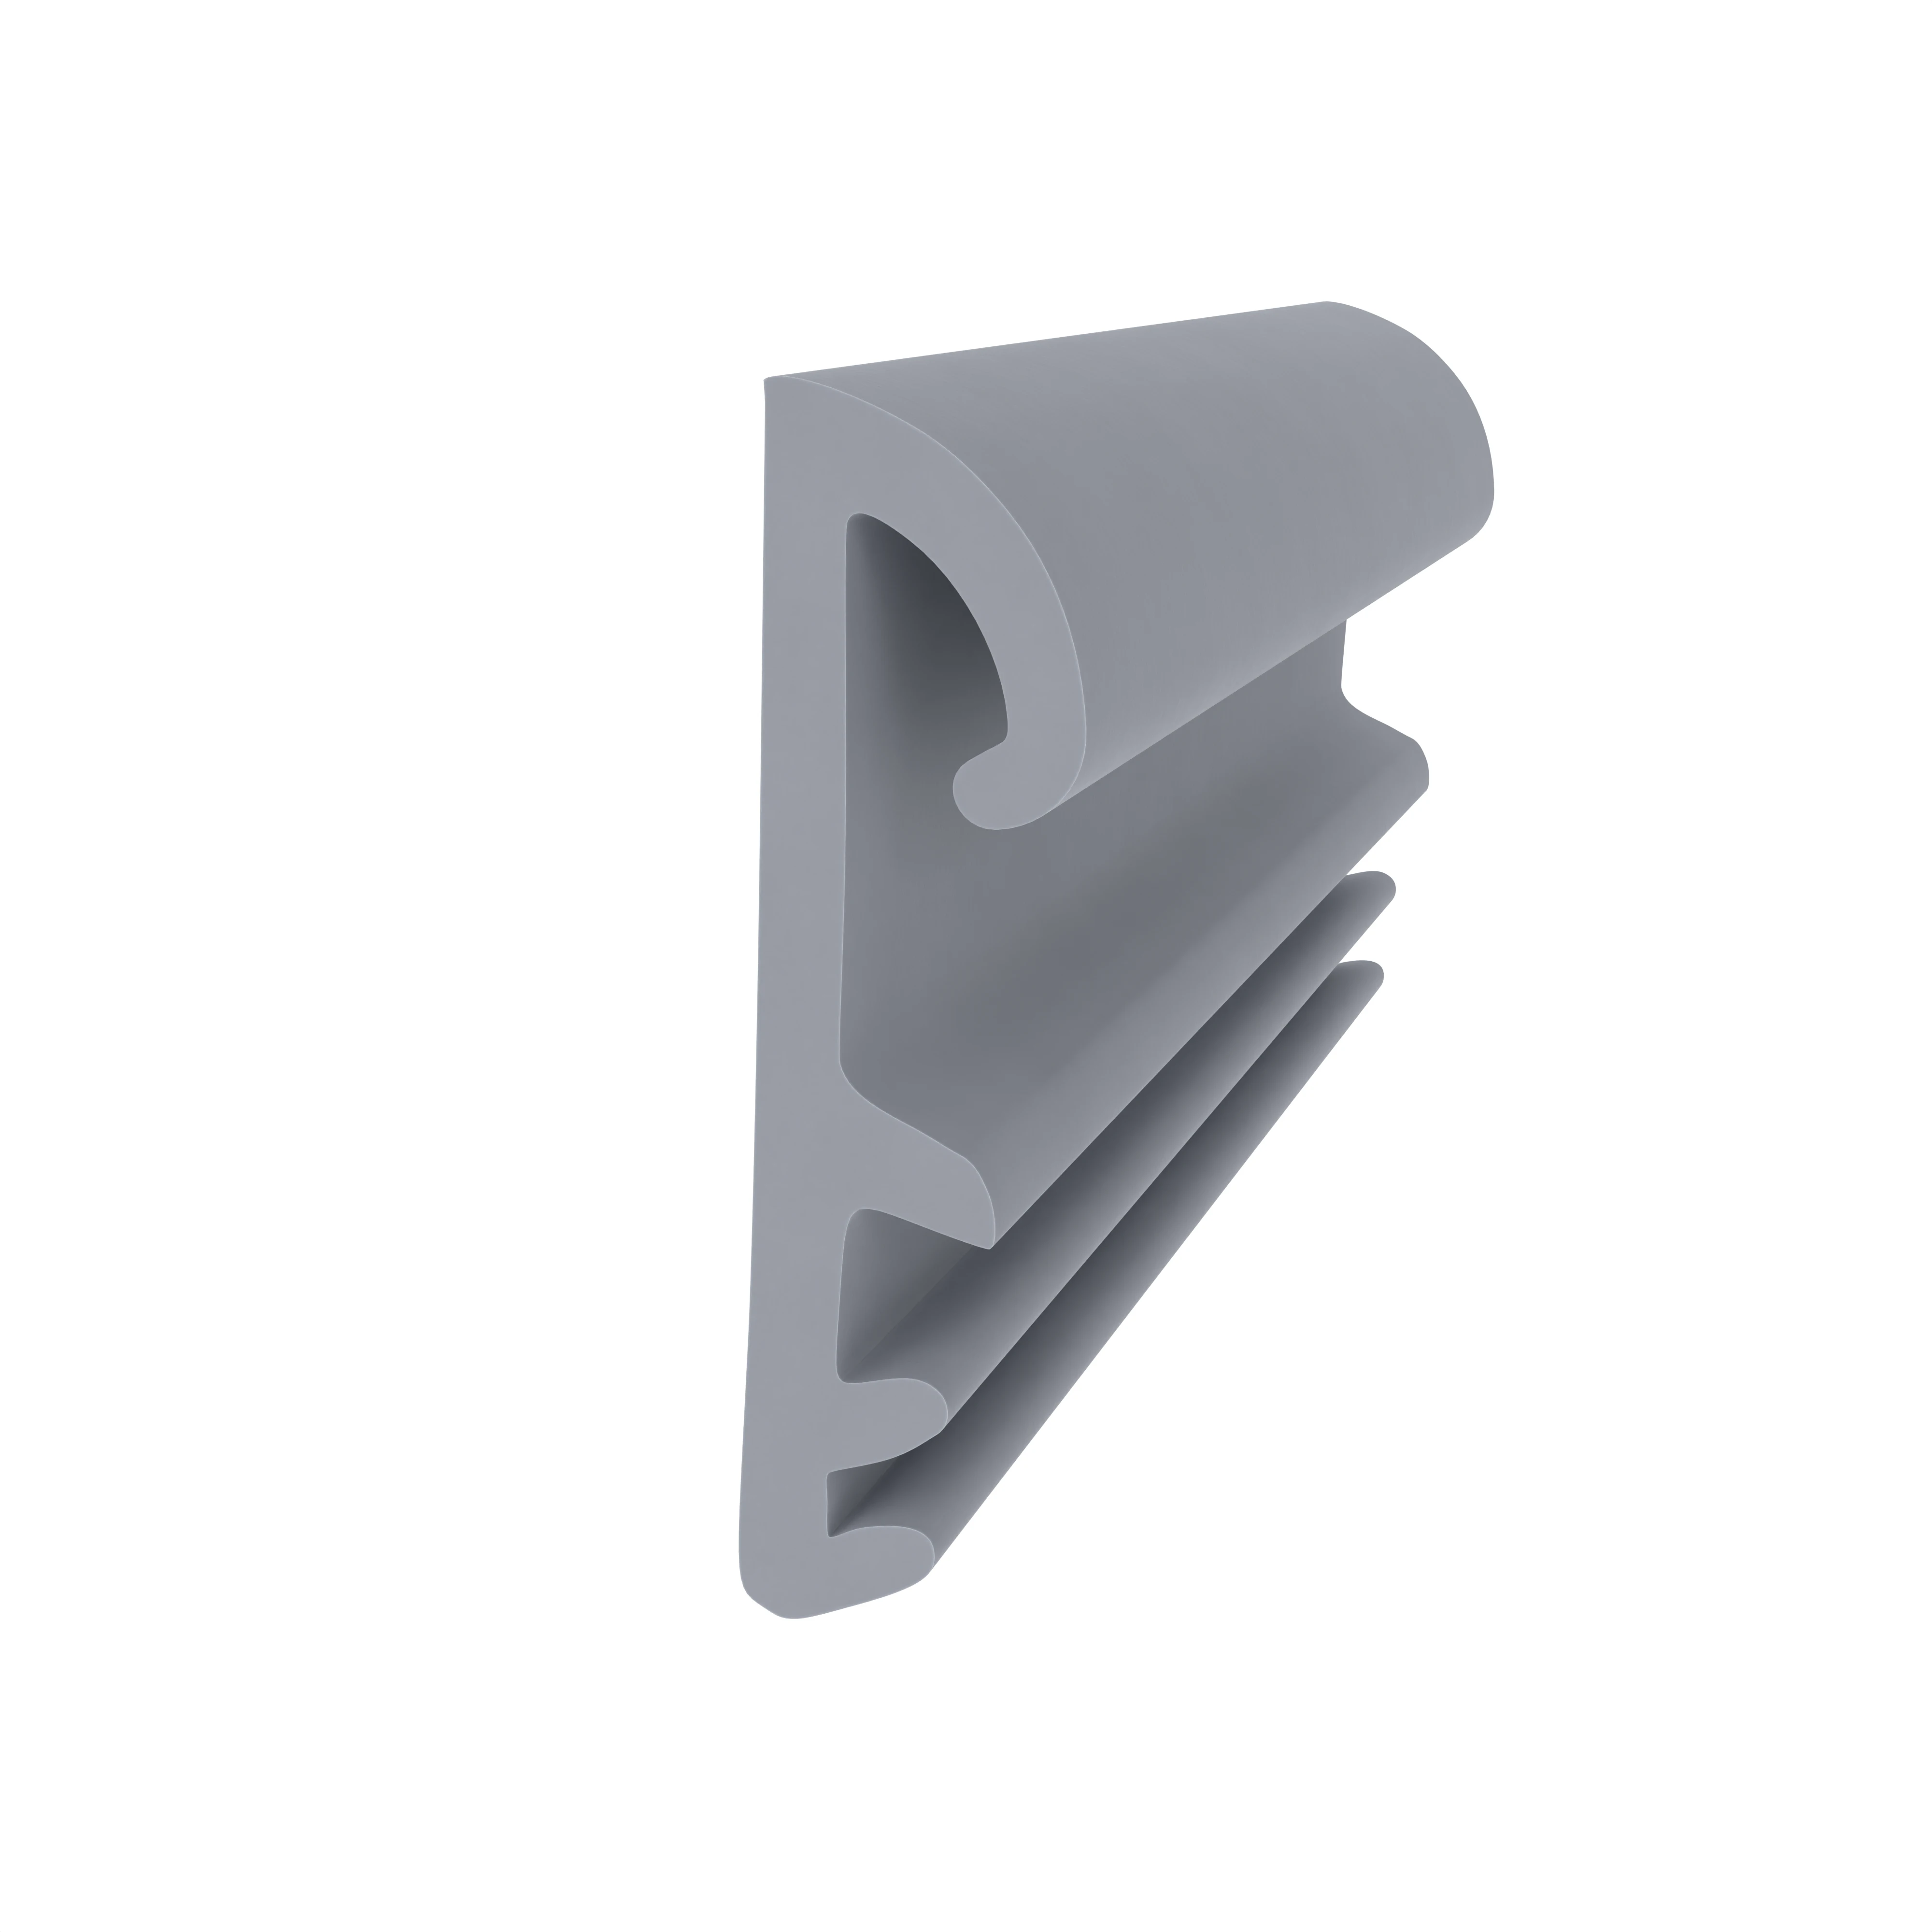 Flügelfalzdichtung für Holzflügel und -zargen | 12 mm Falzhöhe | Farbe: grau